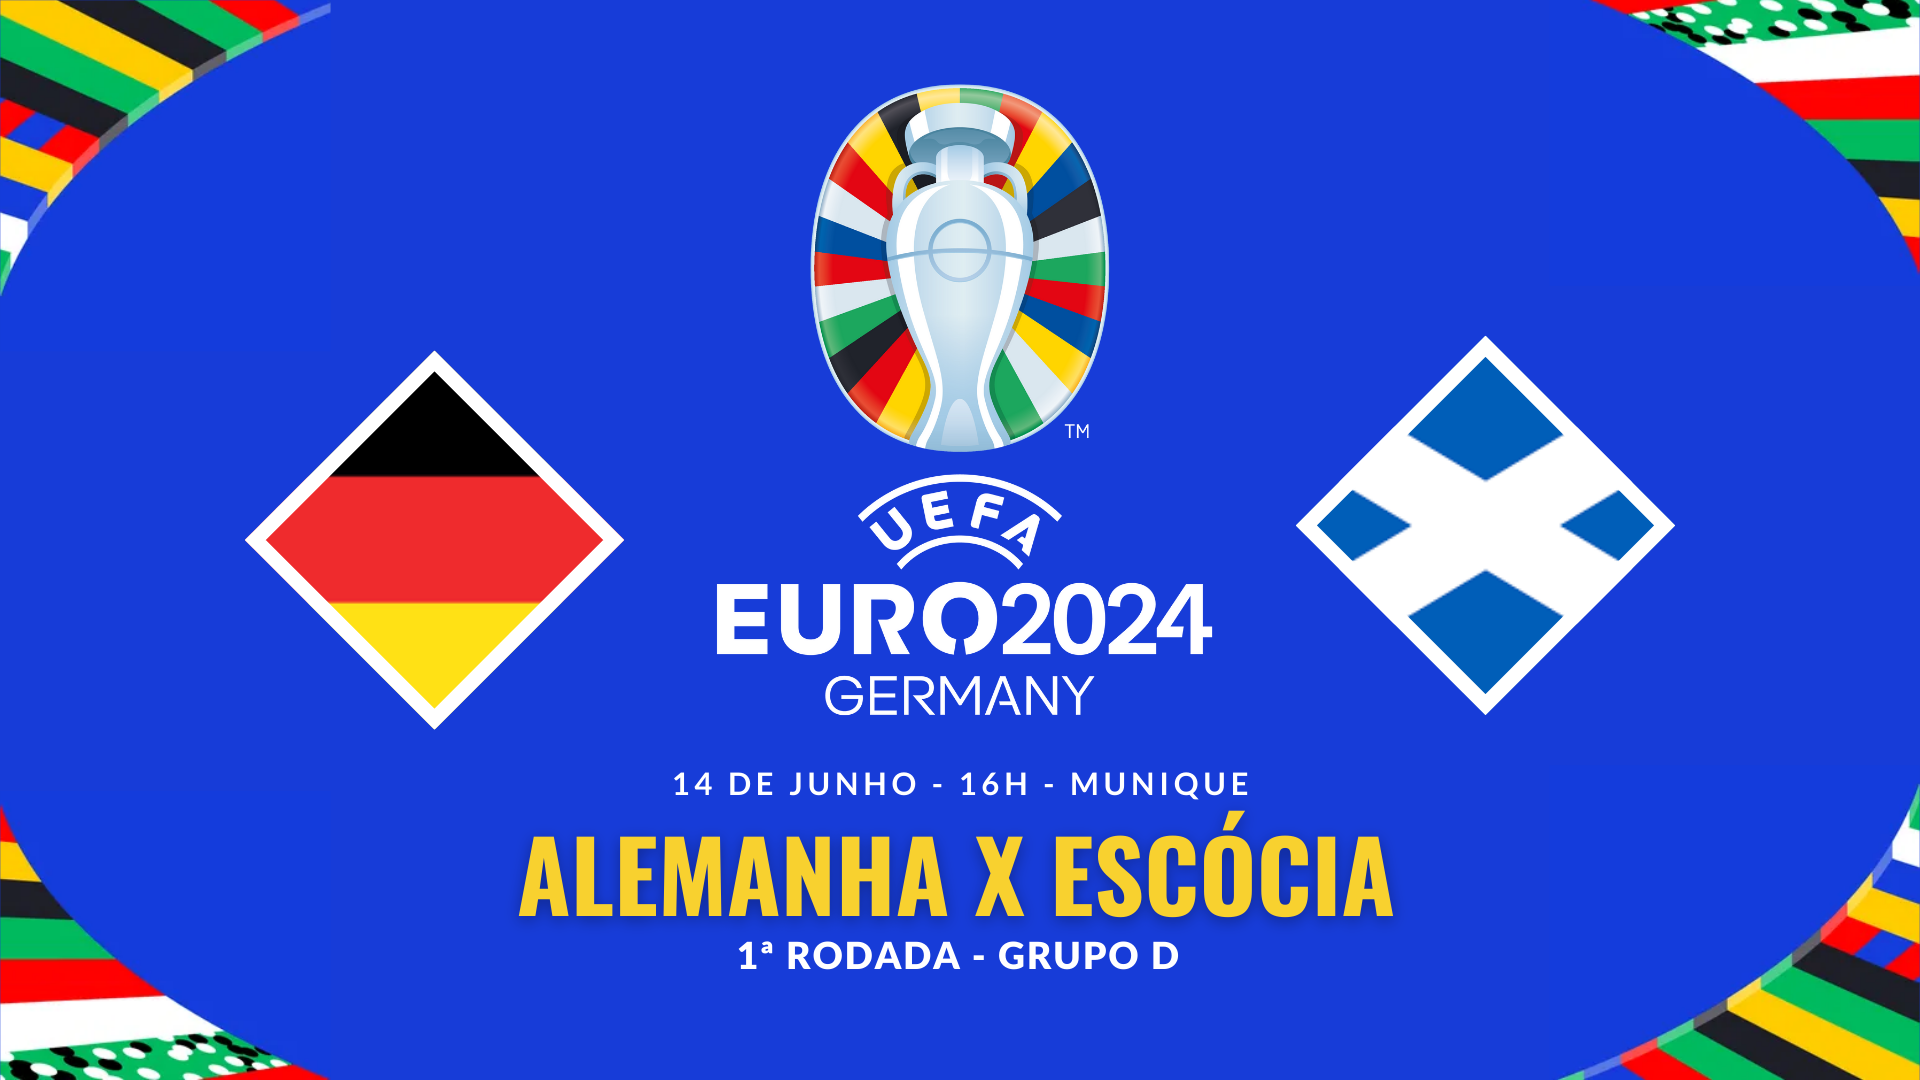 Alemanha x Escócia - 1ª rodada do Grupo A da Euro 2024